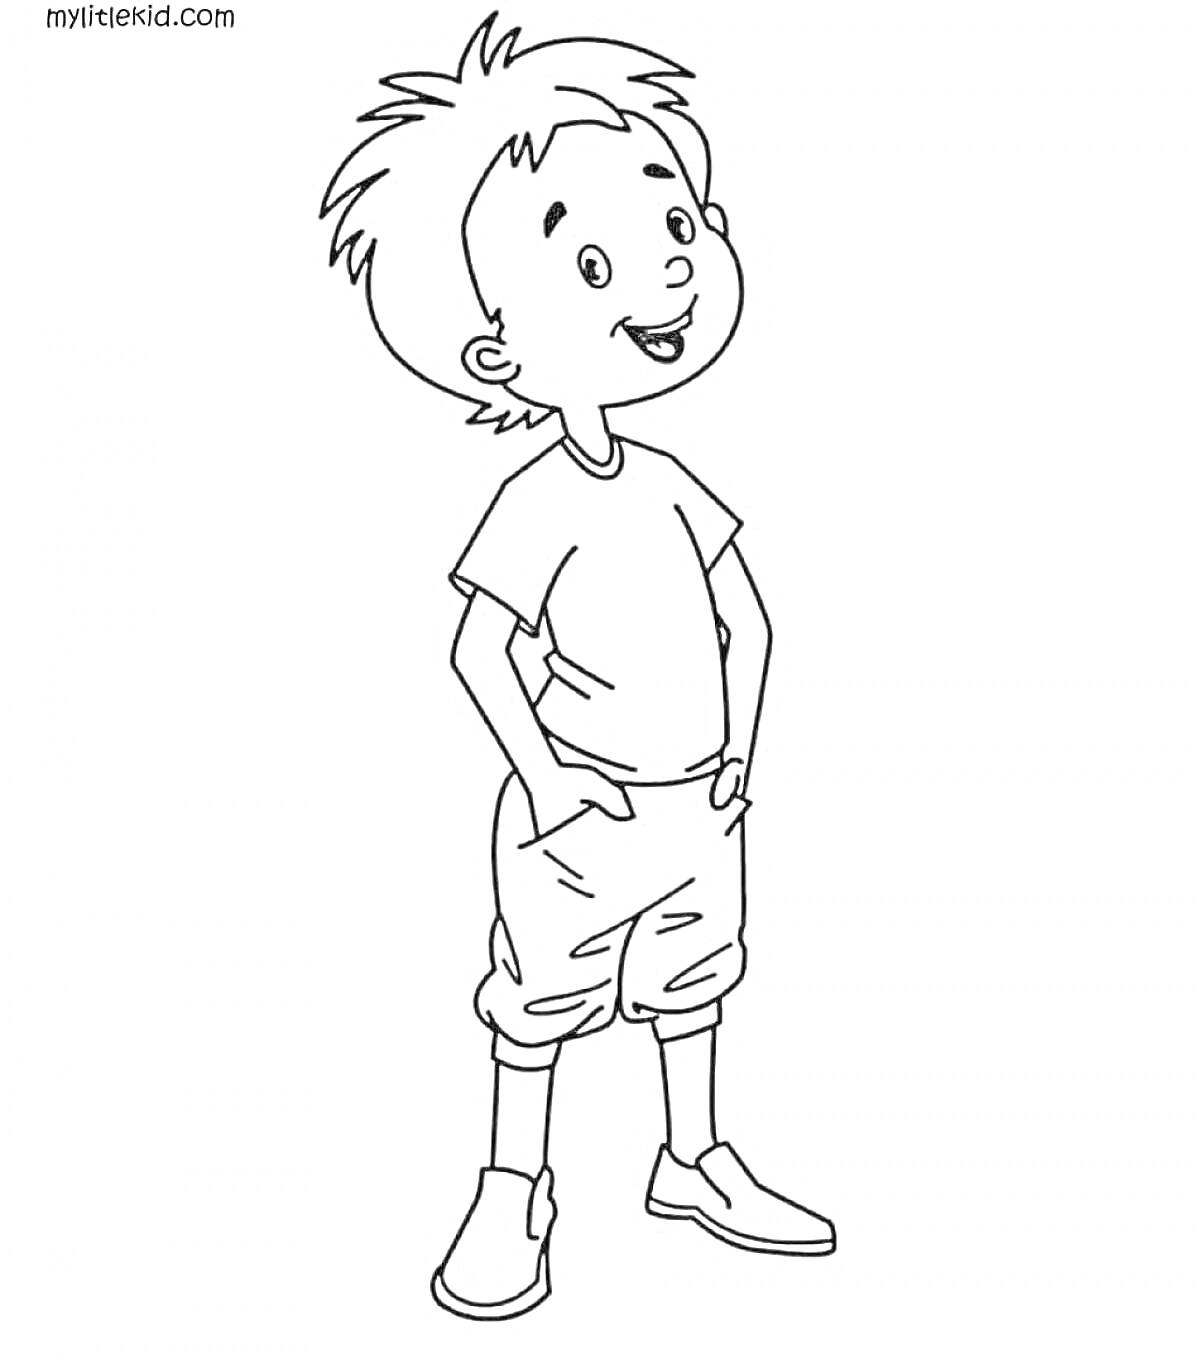 Раскраска Мальчик с короткими волосами в футболке и шортах, с руками в карманах, улыбающийся